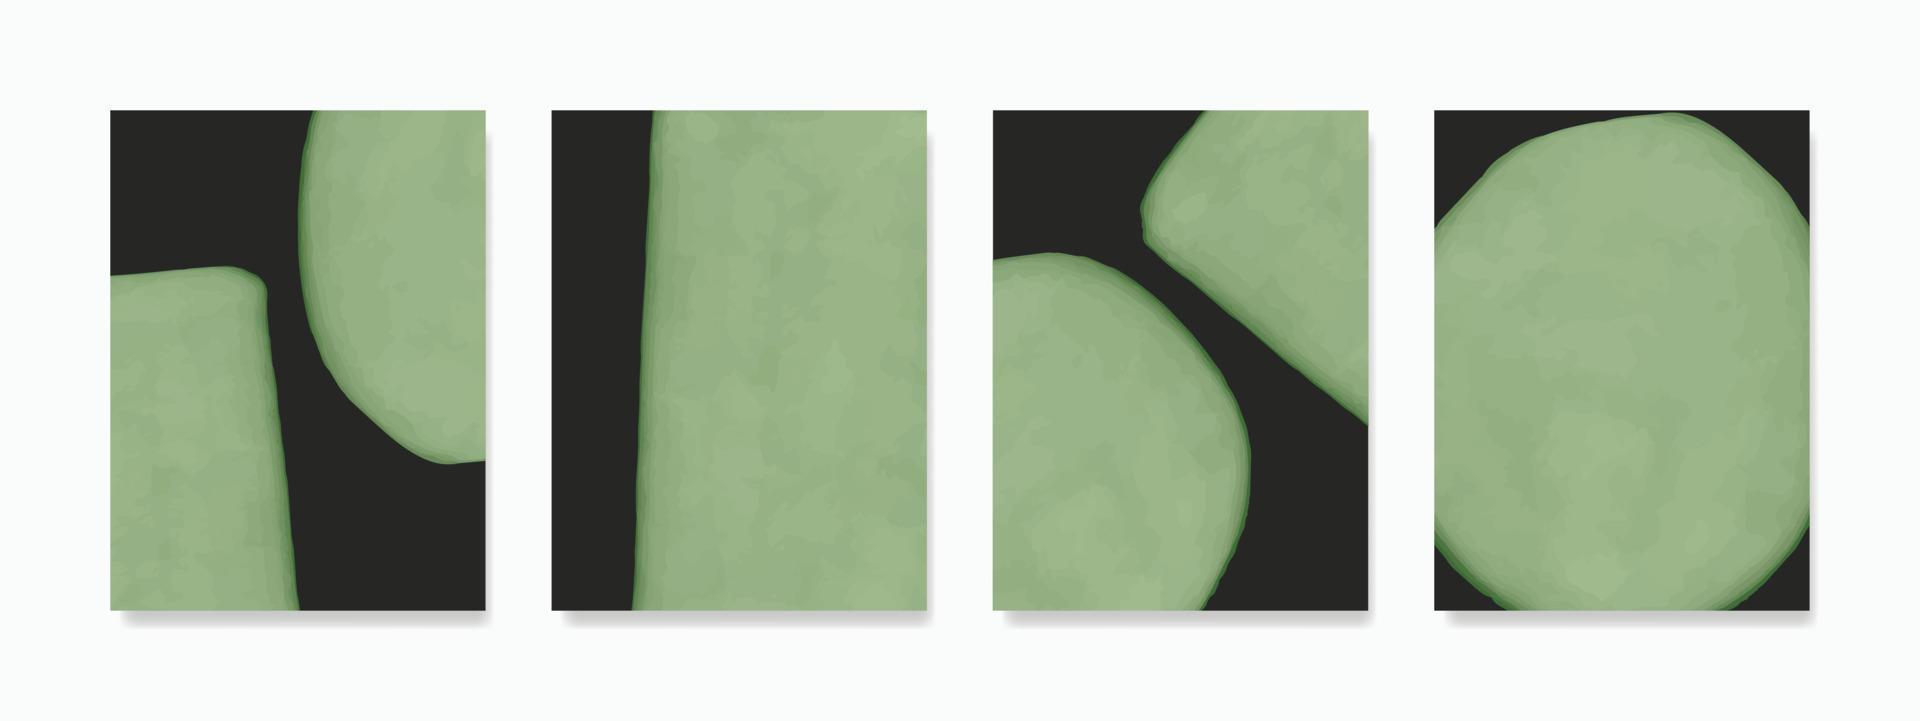 mooi hand- geschilderd minimalistische muur kunst. groen plein en ronde vormen geregeld in een proportioneel samenstelling Aan donker achtergrond. ontwerp voor muur decoratie, ansichtkaarten, flyers. vector